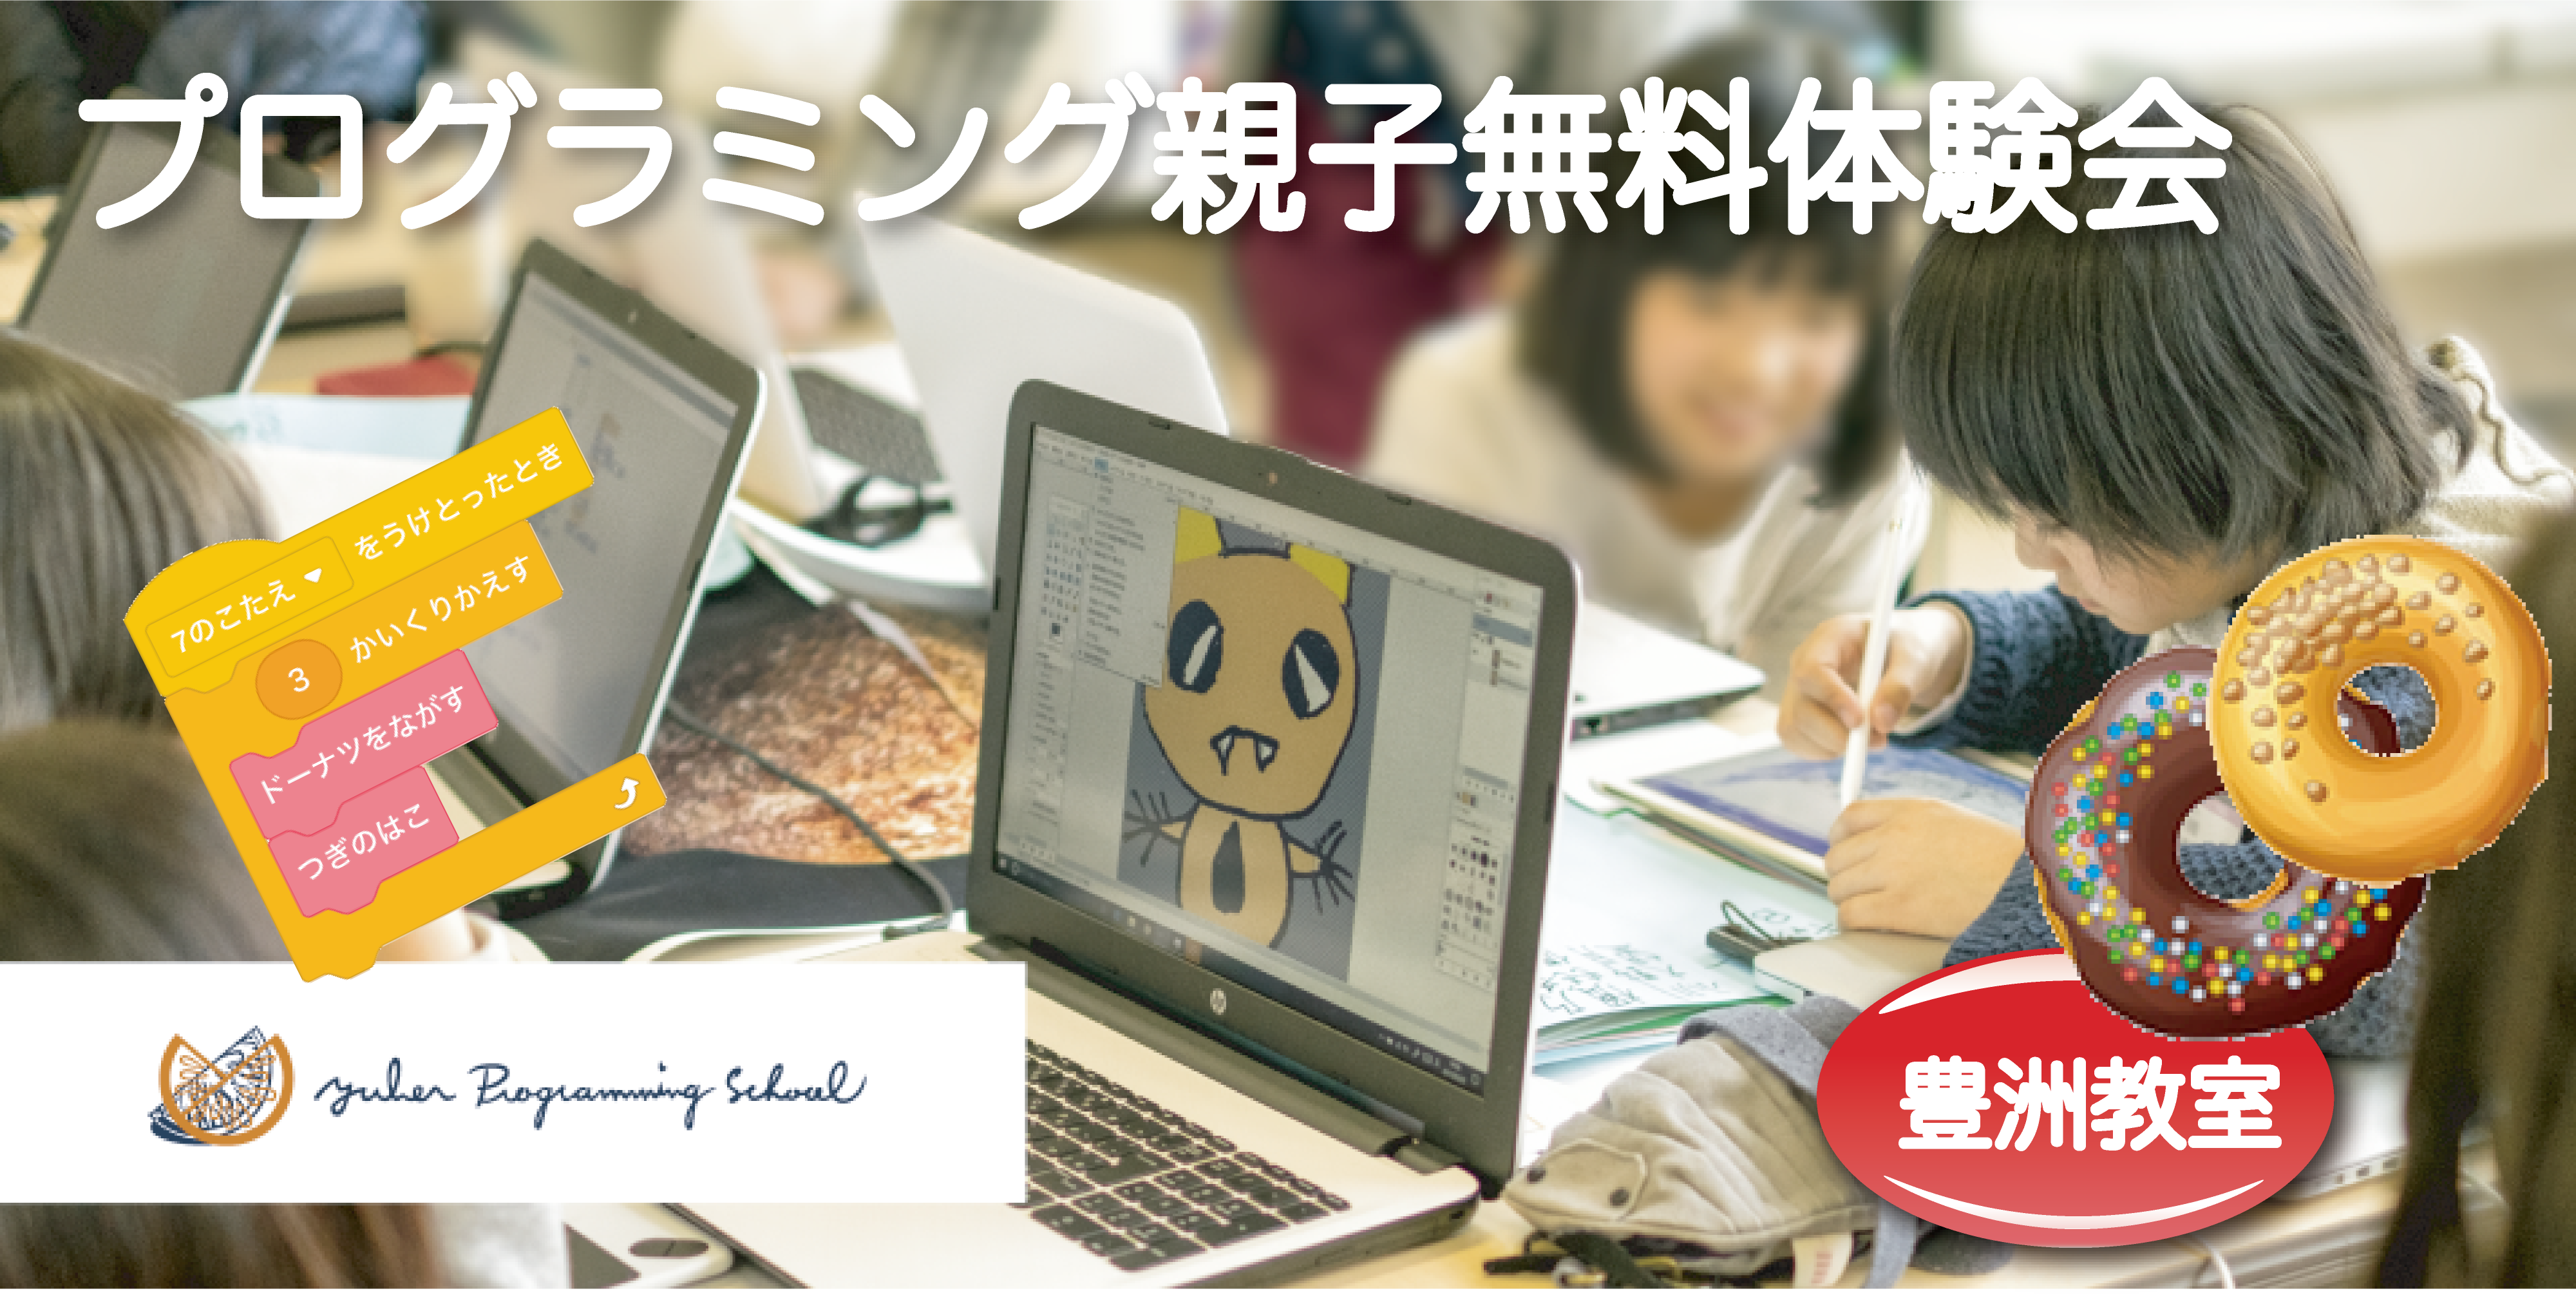 【豊洲・東陽町】プログラミング学習を始めよう！ユーバープログラミングスクール親子無料体験